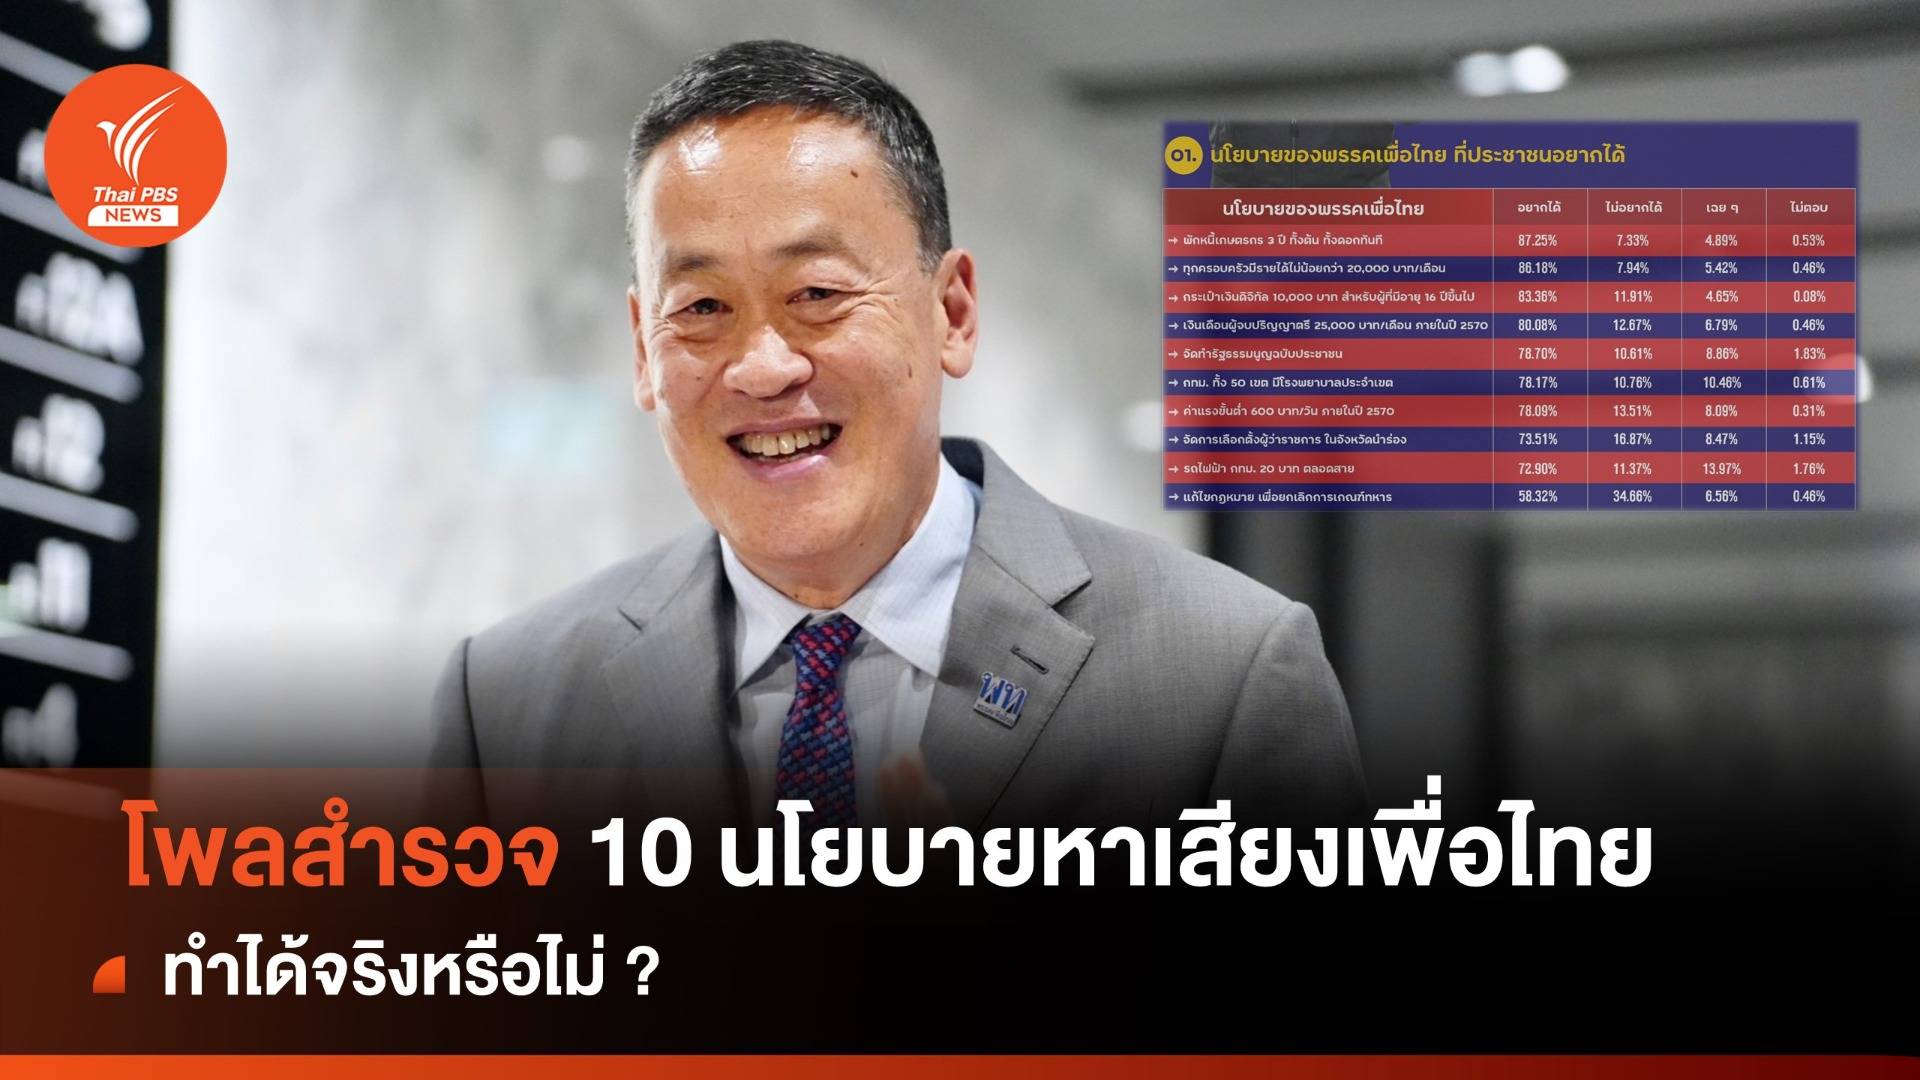 โพลสำรวจ 10 นโยบายหาเสียงเพื่อไทย ทำได้จริงหรือไม่ ?